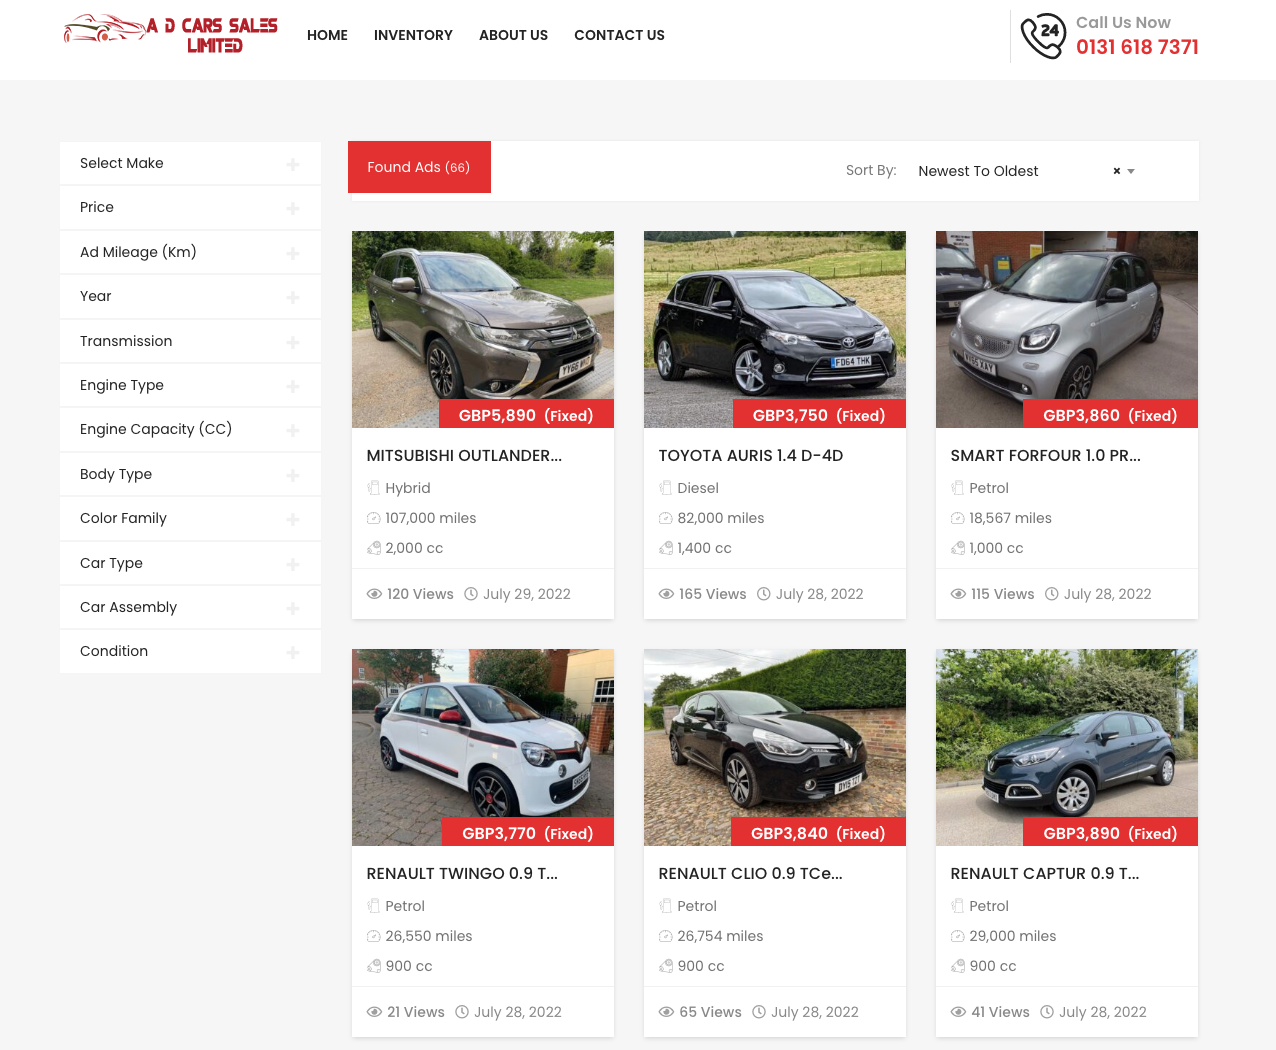 AD Car Sales website